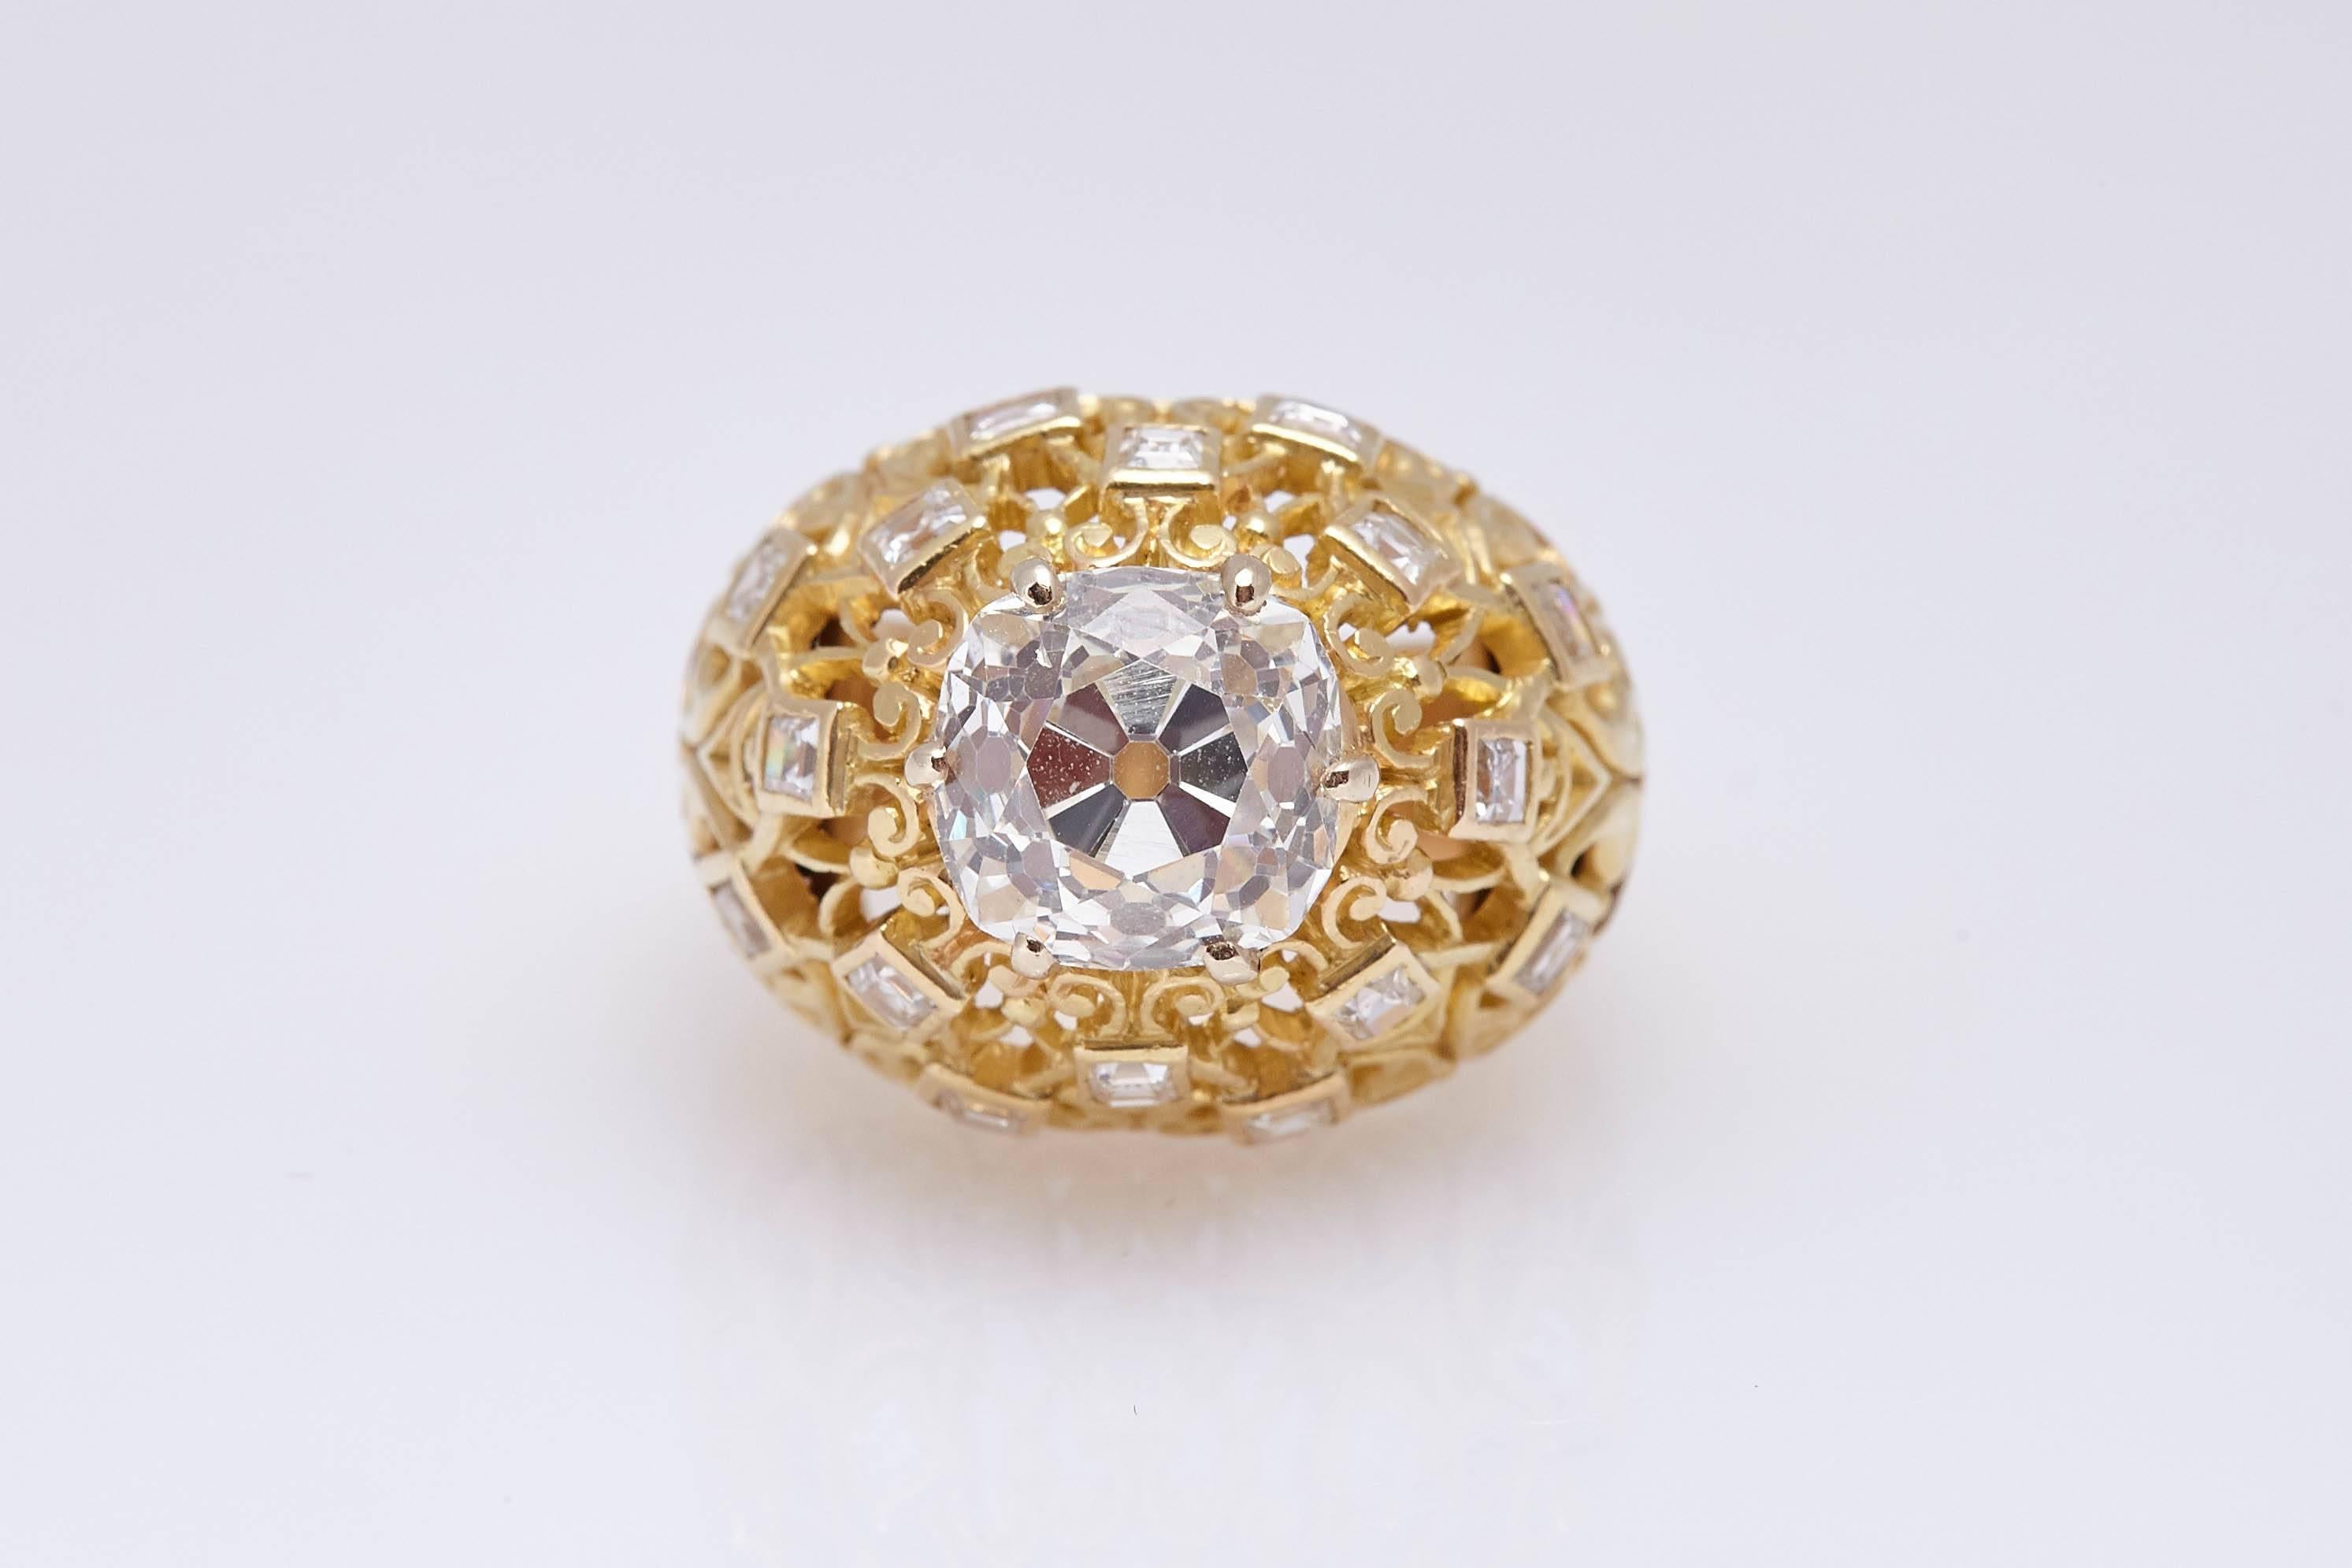 Bague rétro en forme de dôme en or jaune 18 carats, la monture ornée de fins diamants ronds, mettant en valeur un diamant taille brillant Old Mine pesant 4,24 (couleur L, pureté SI1 - certificat GIA). Fabriqué en France, vers les années 1950.